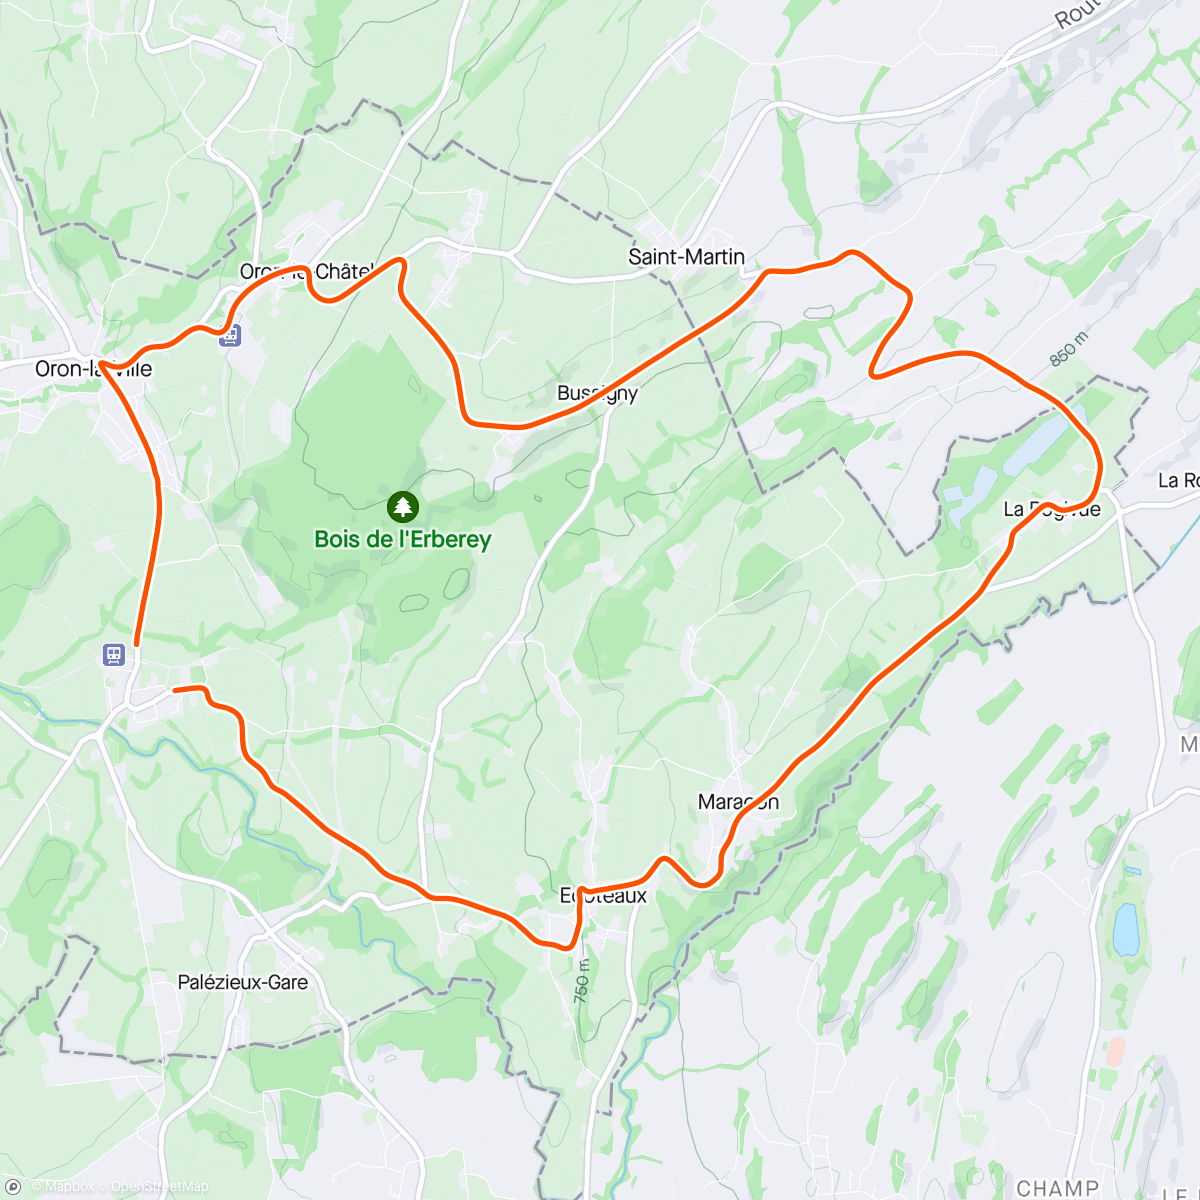 「🇨🇭Tour de Romandie TT」活動的地圖